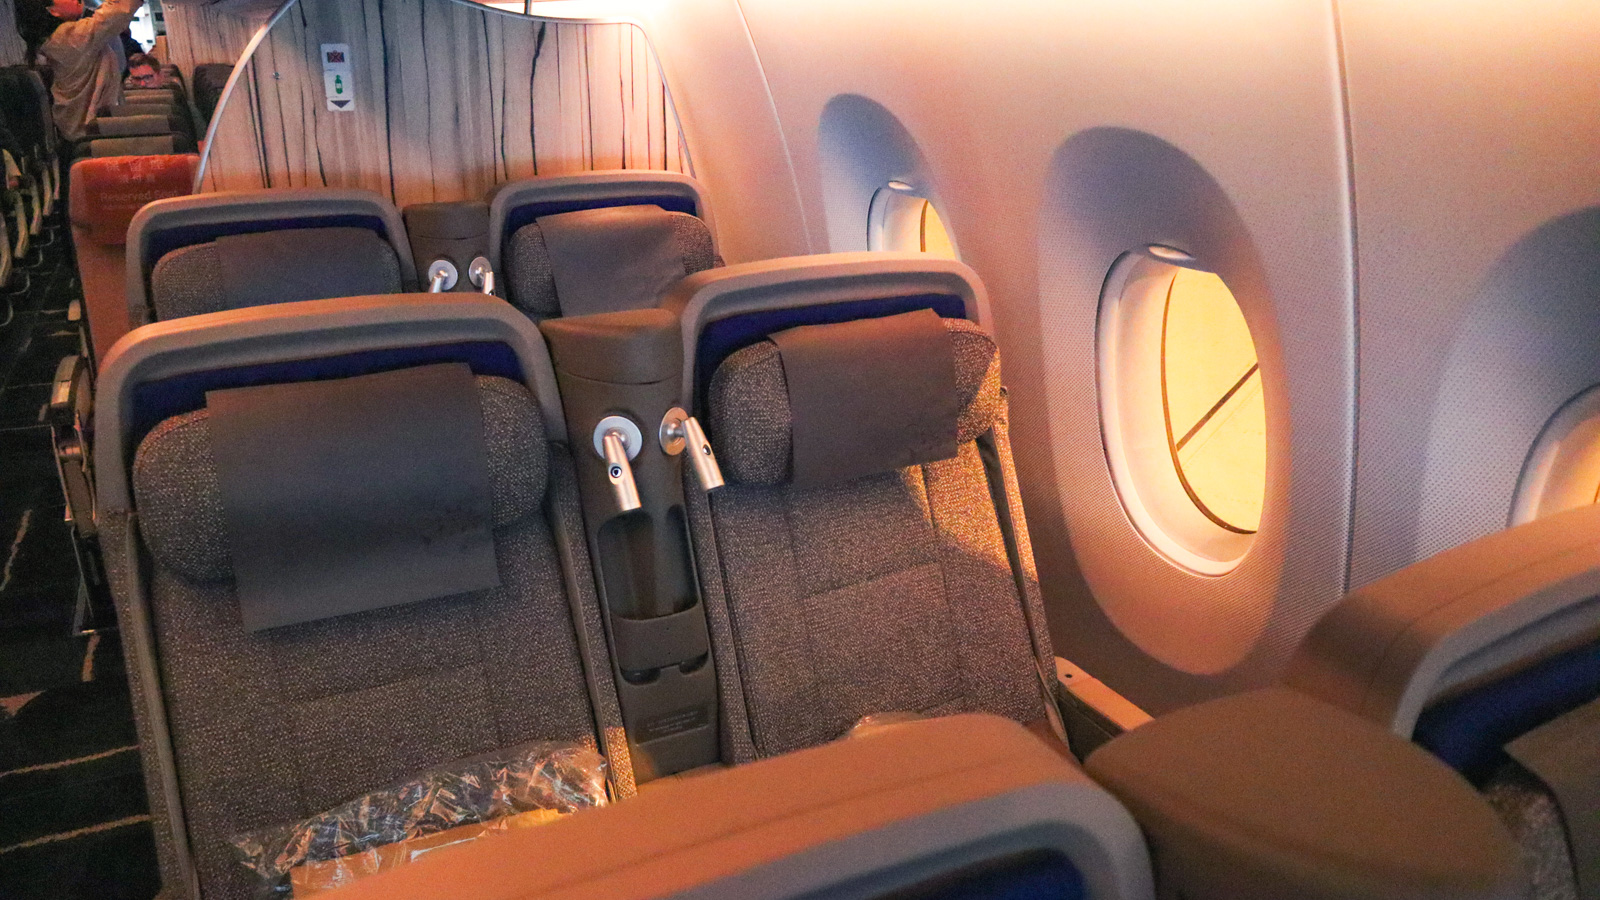 China Airlines Premium Economy window seating